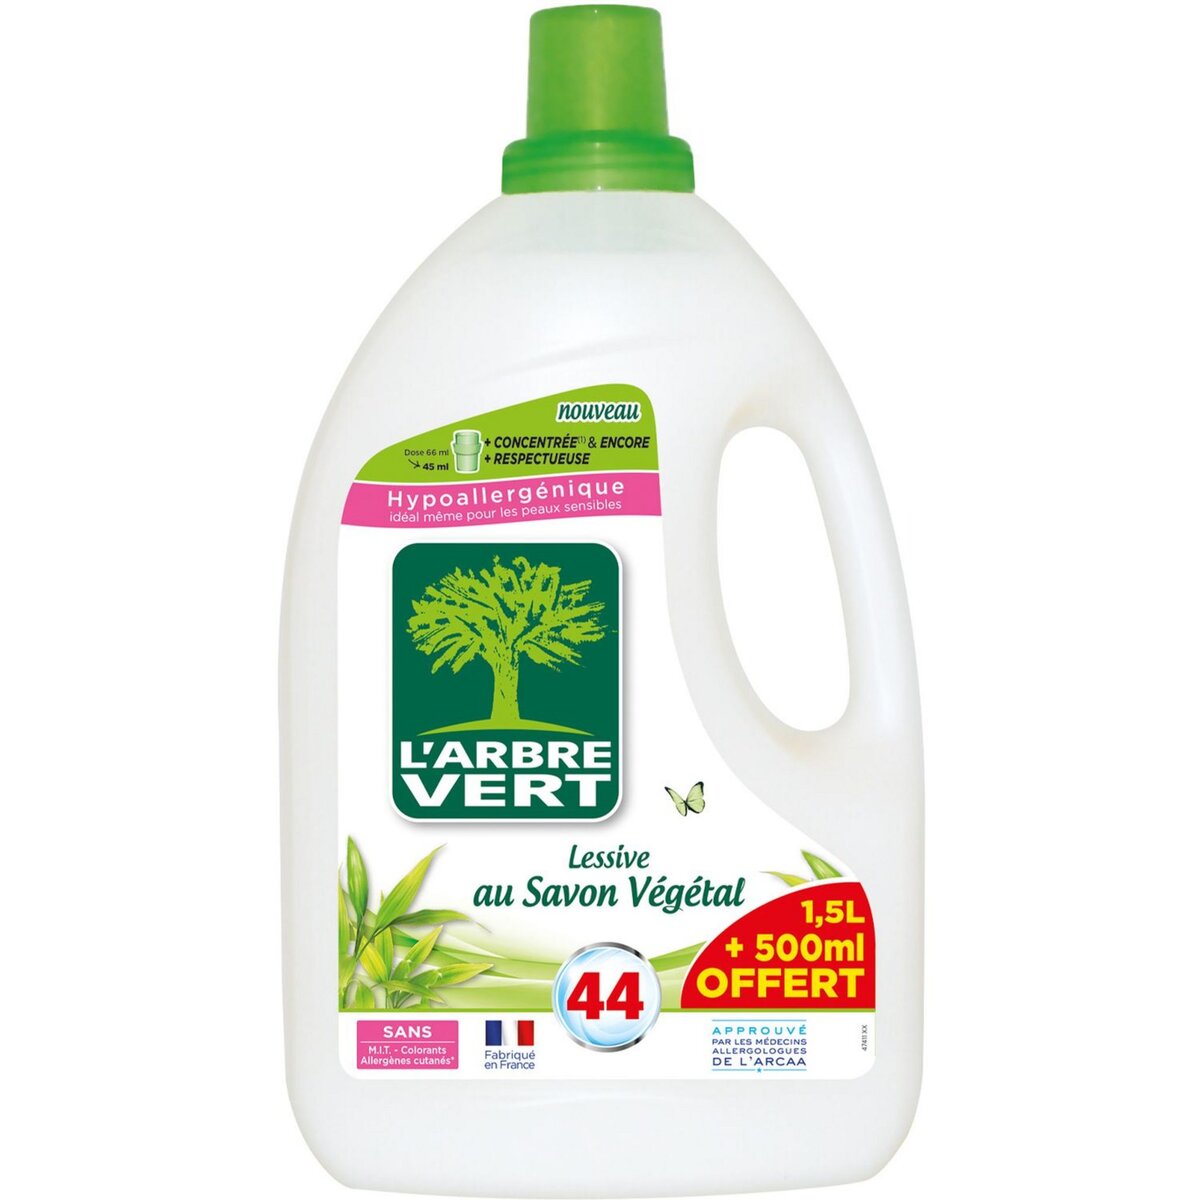 L'ARBRE VERT L'Arbre Vert Lessive hypoallergénique au savon végétal 44 lavages 2l 44 lavages 2l